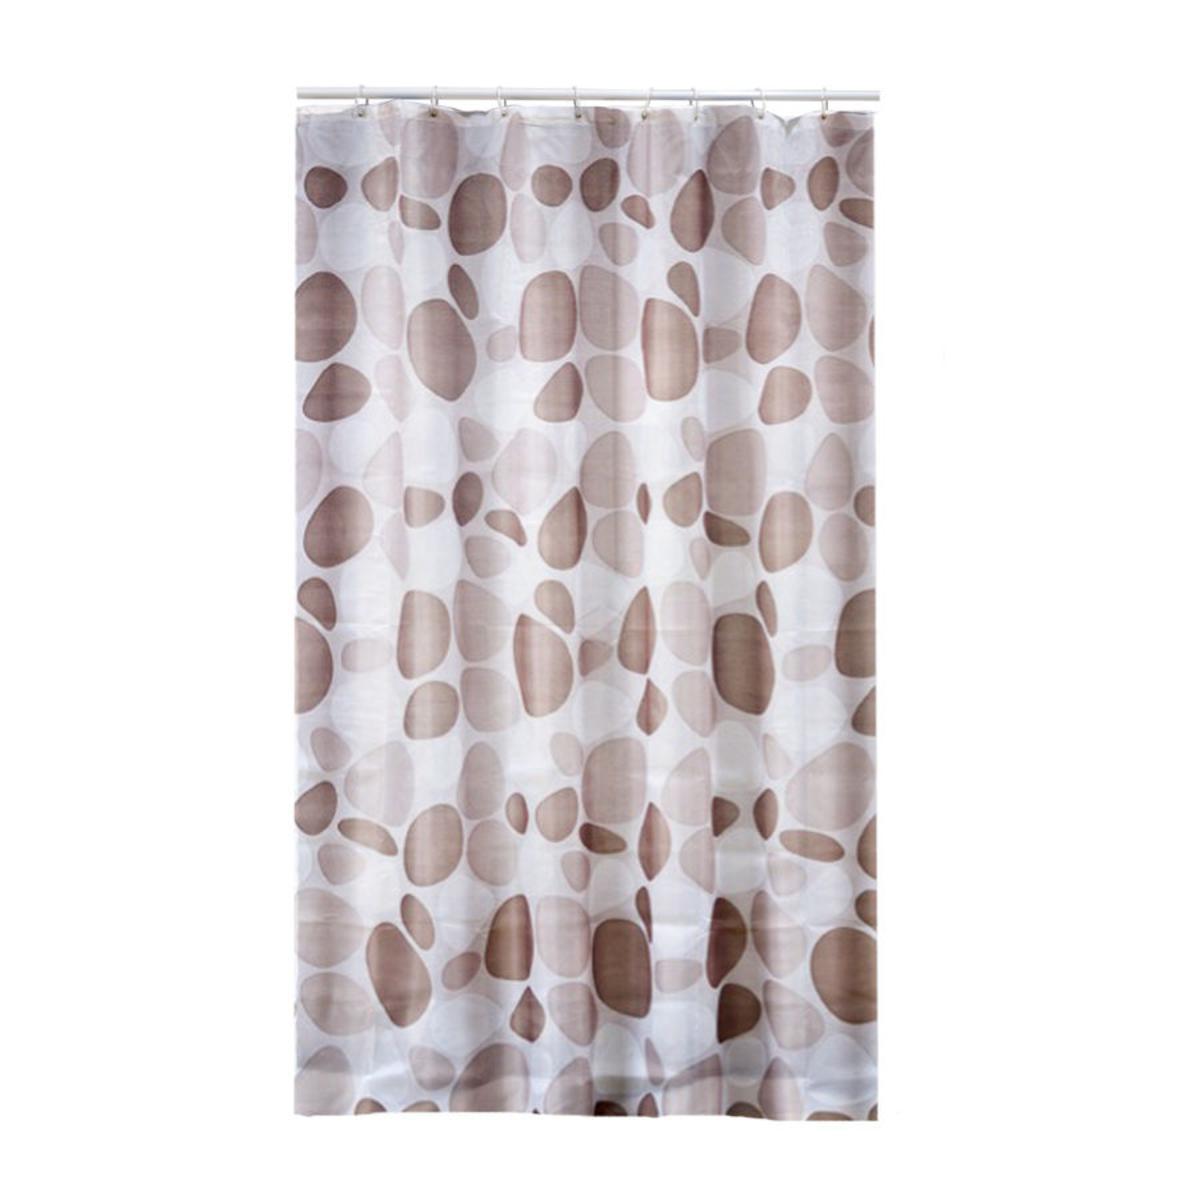 Rideau de douche textile en polyester - 180 x 200 cm - Beige